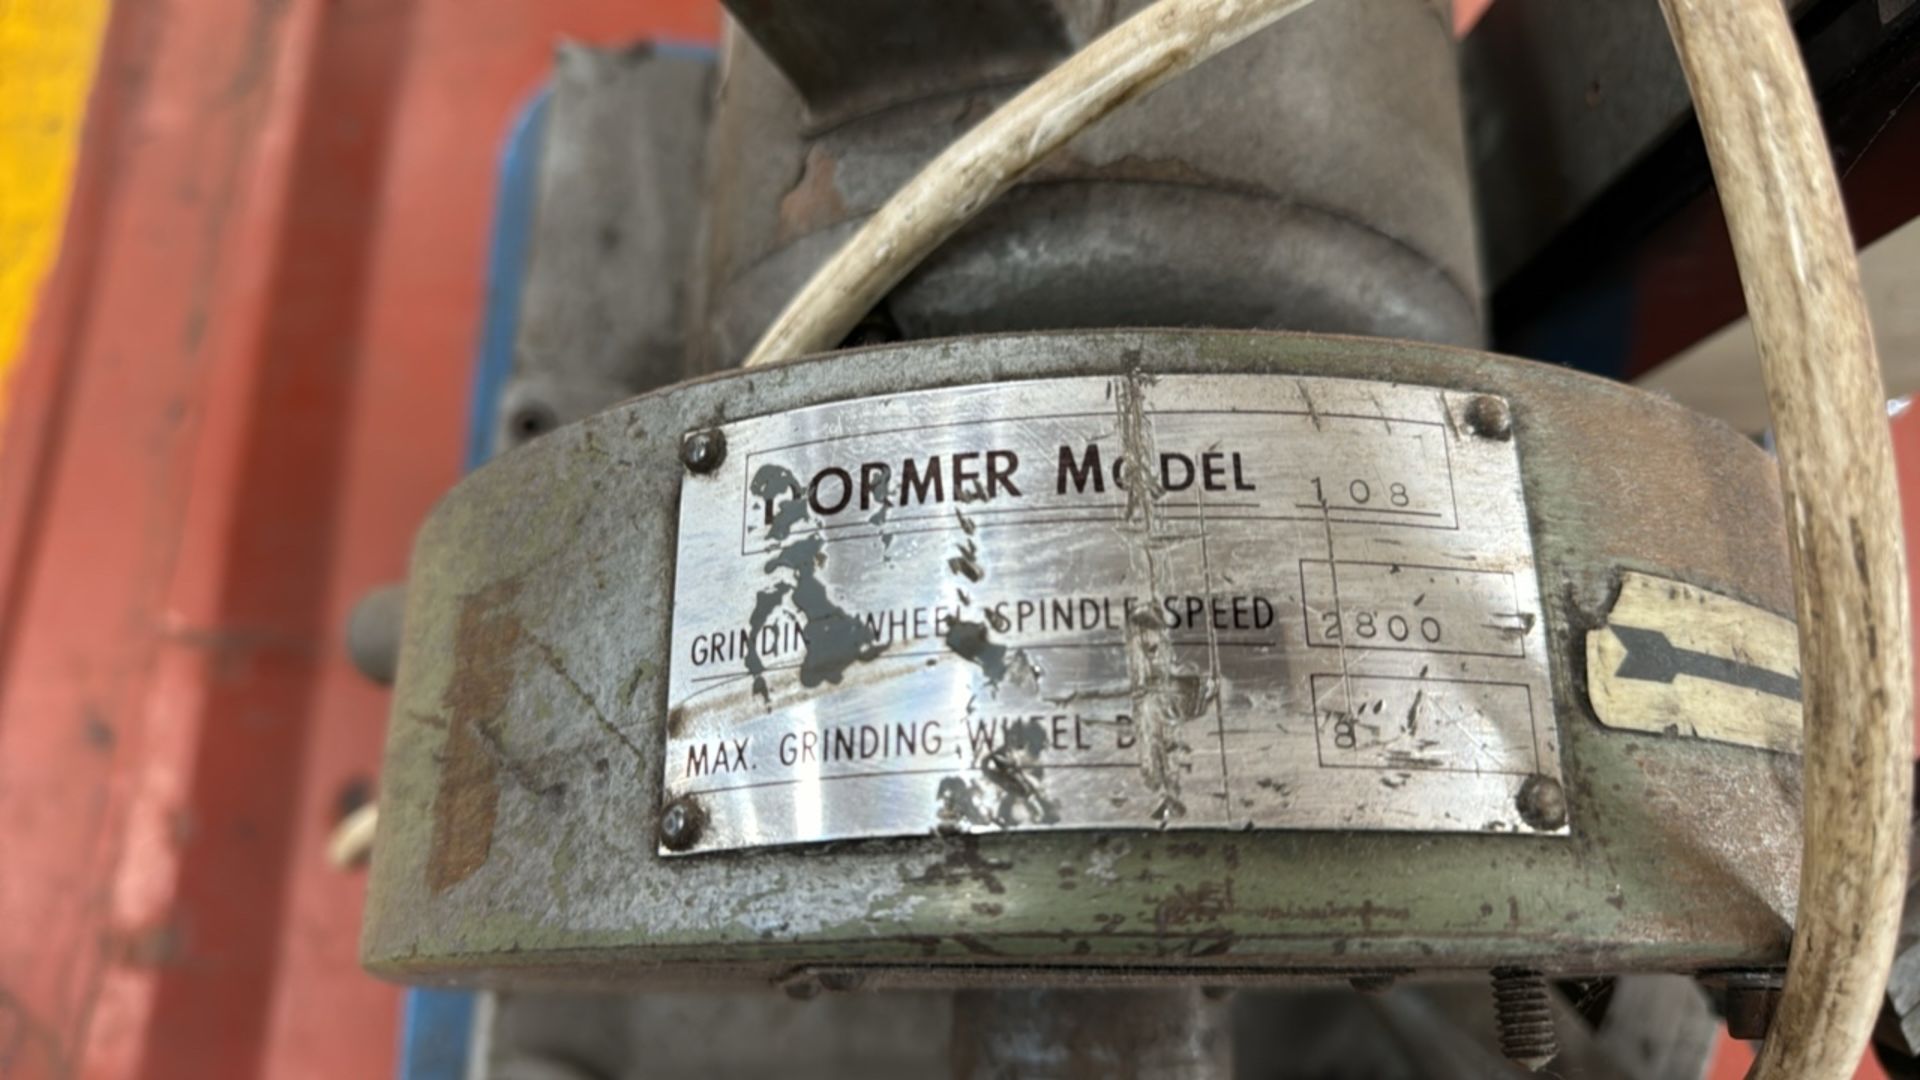 Dormer Model 108 Drill Grinder - Image 4 of 6